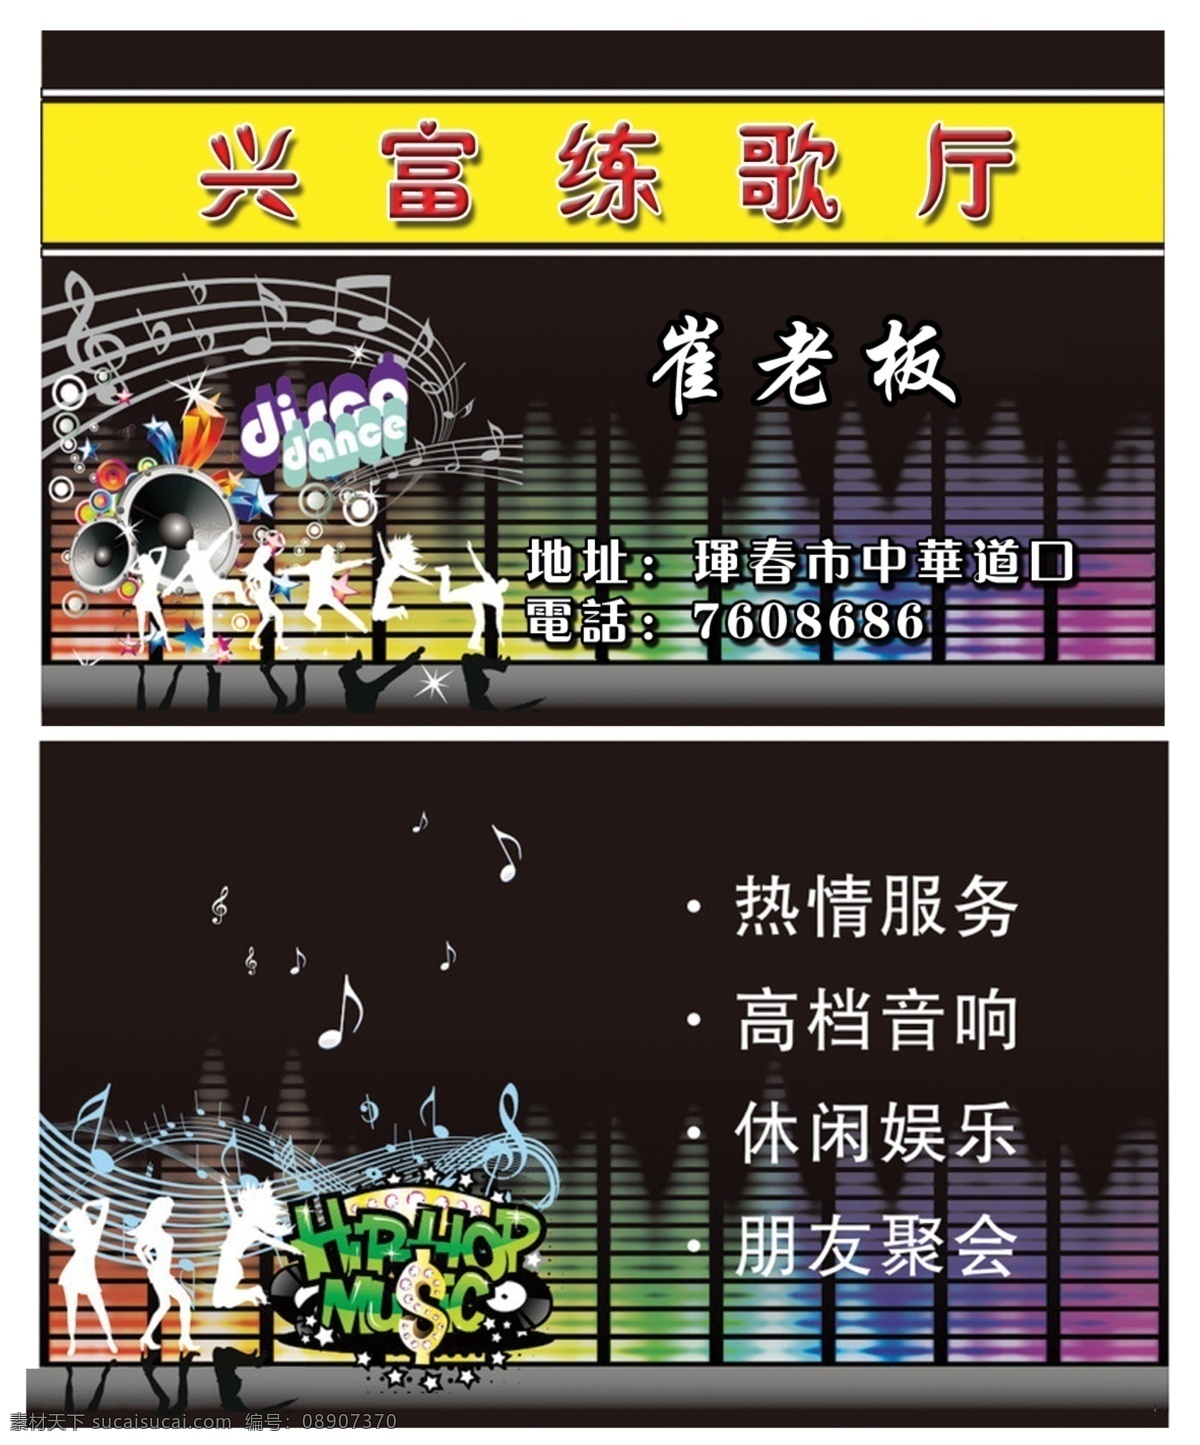 歌厅名片 歌厅 音符 文字 舞动 人群 音乐 名片卡片 广告设计模板 源文件